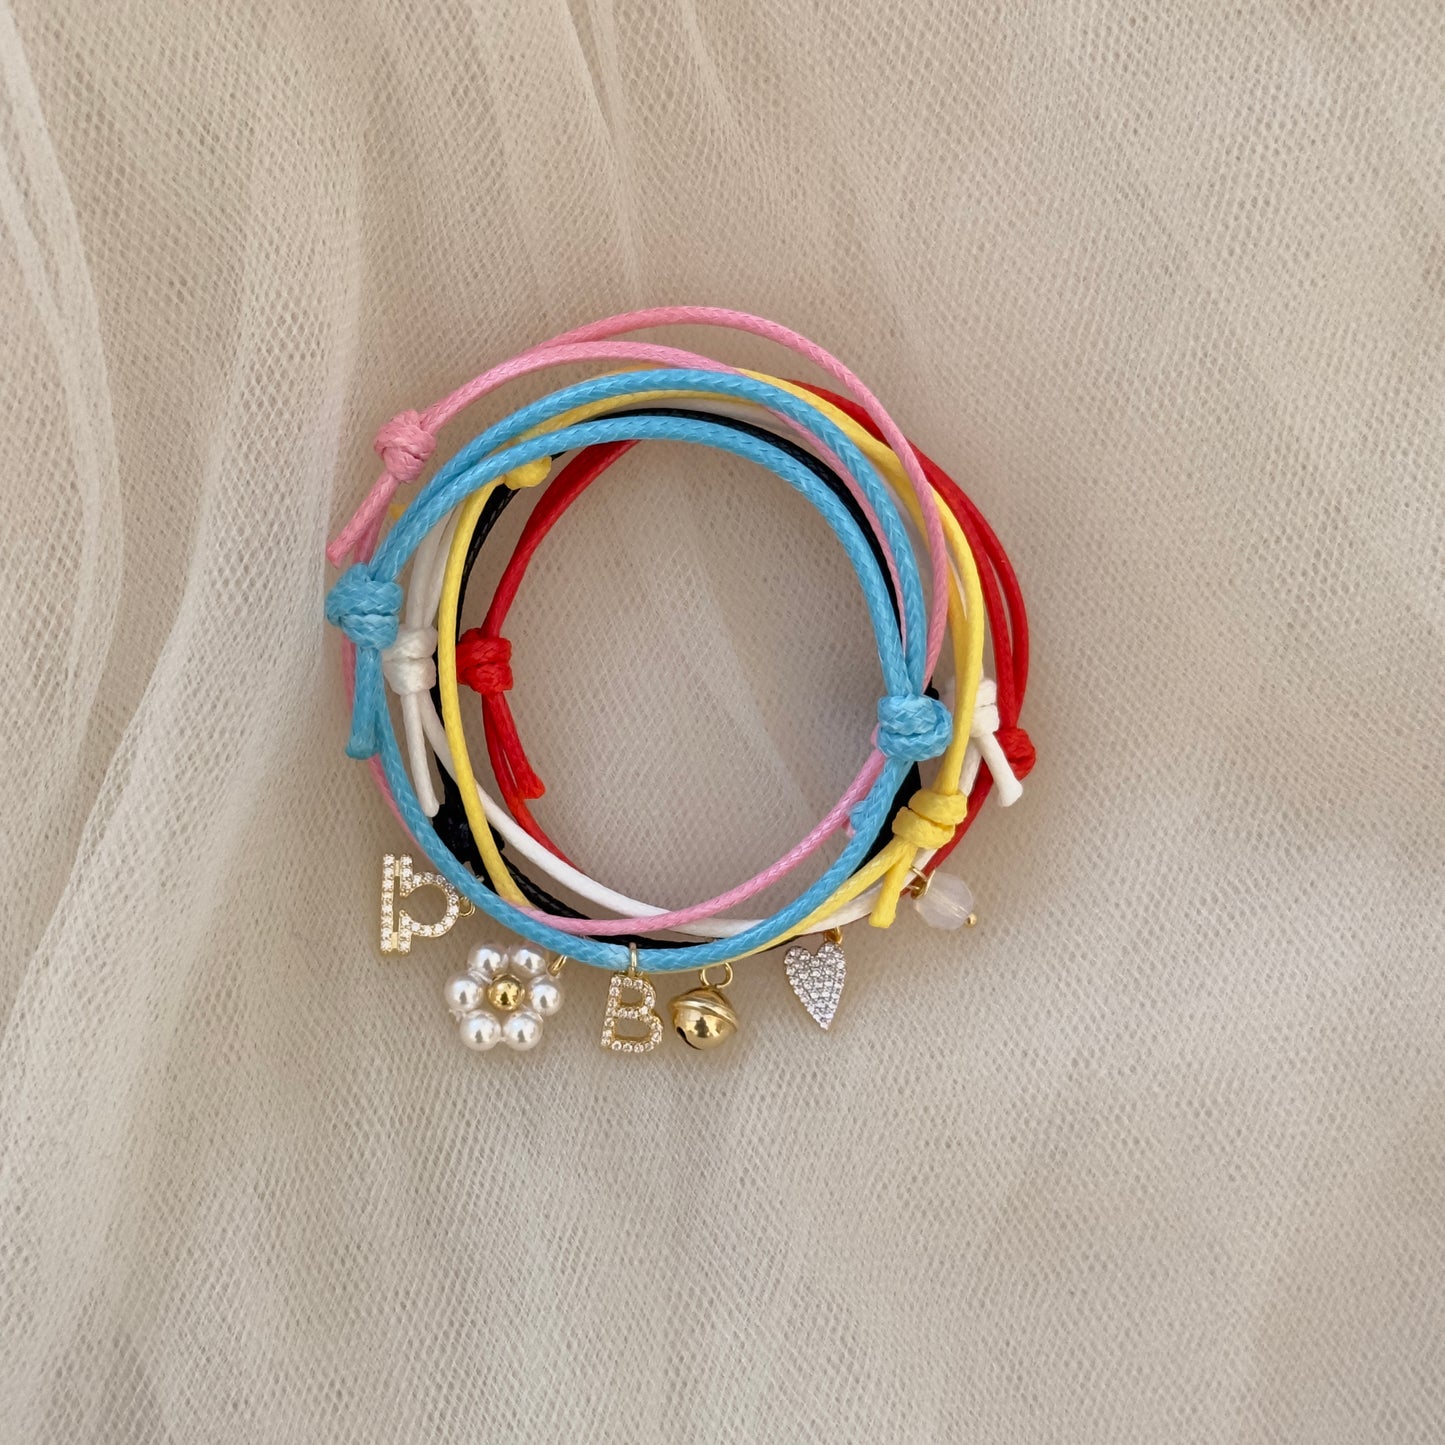 Summer Petit Bonheur bracelet